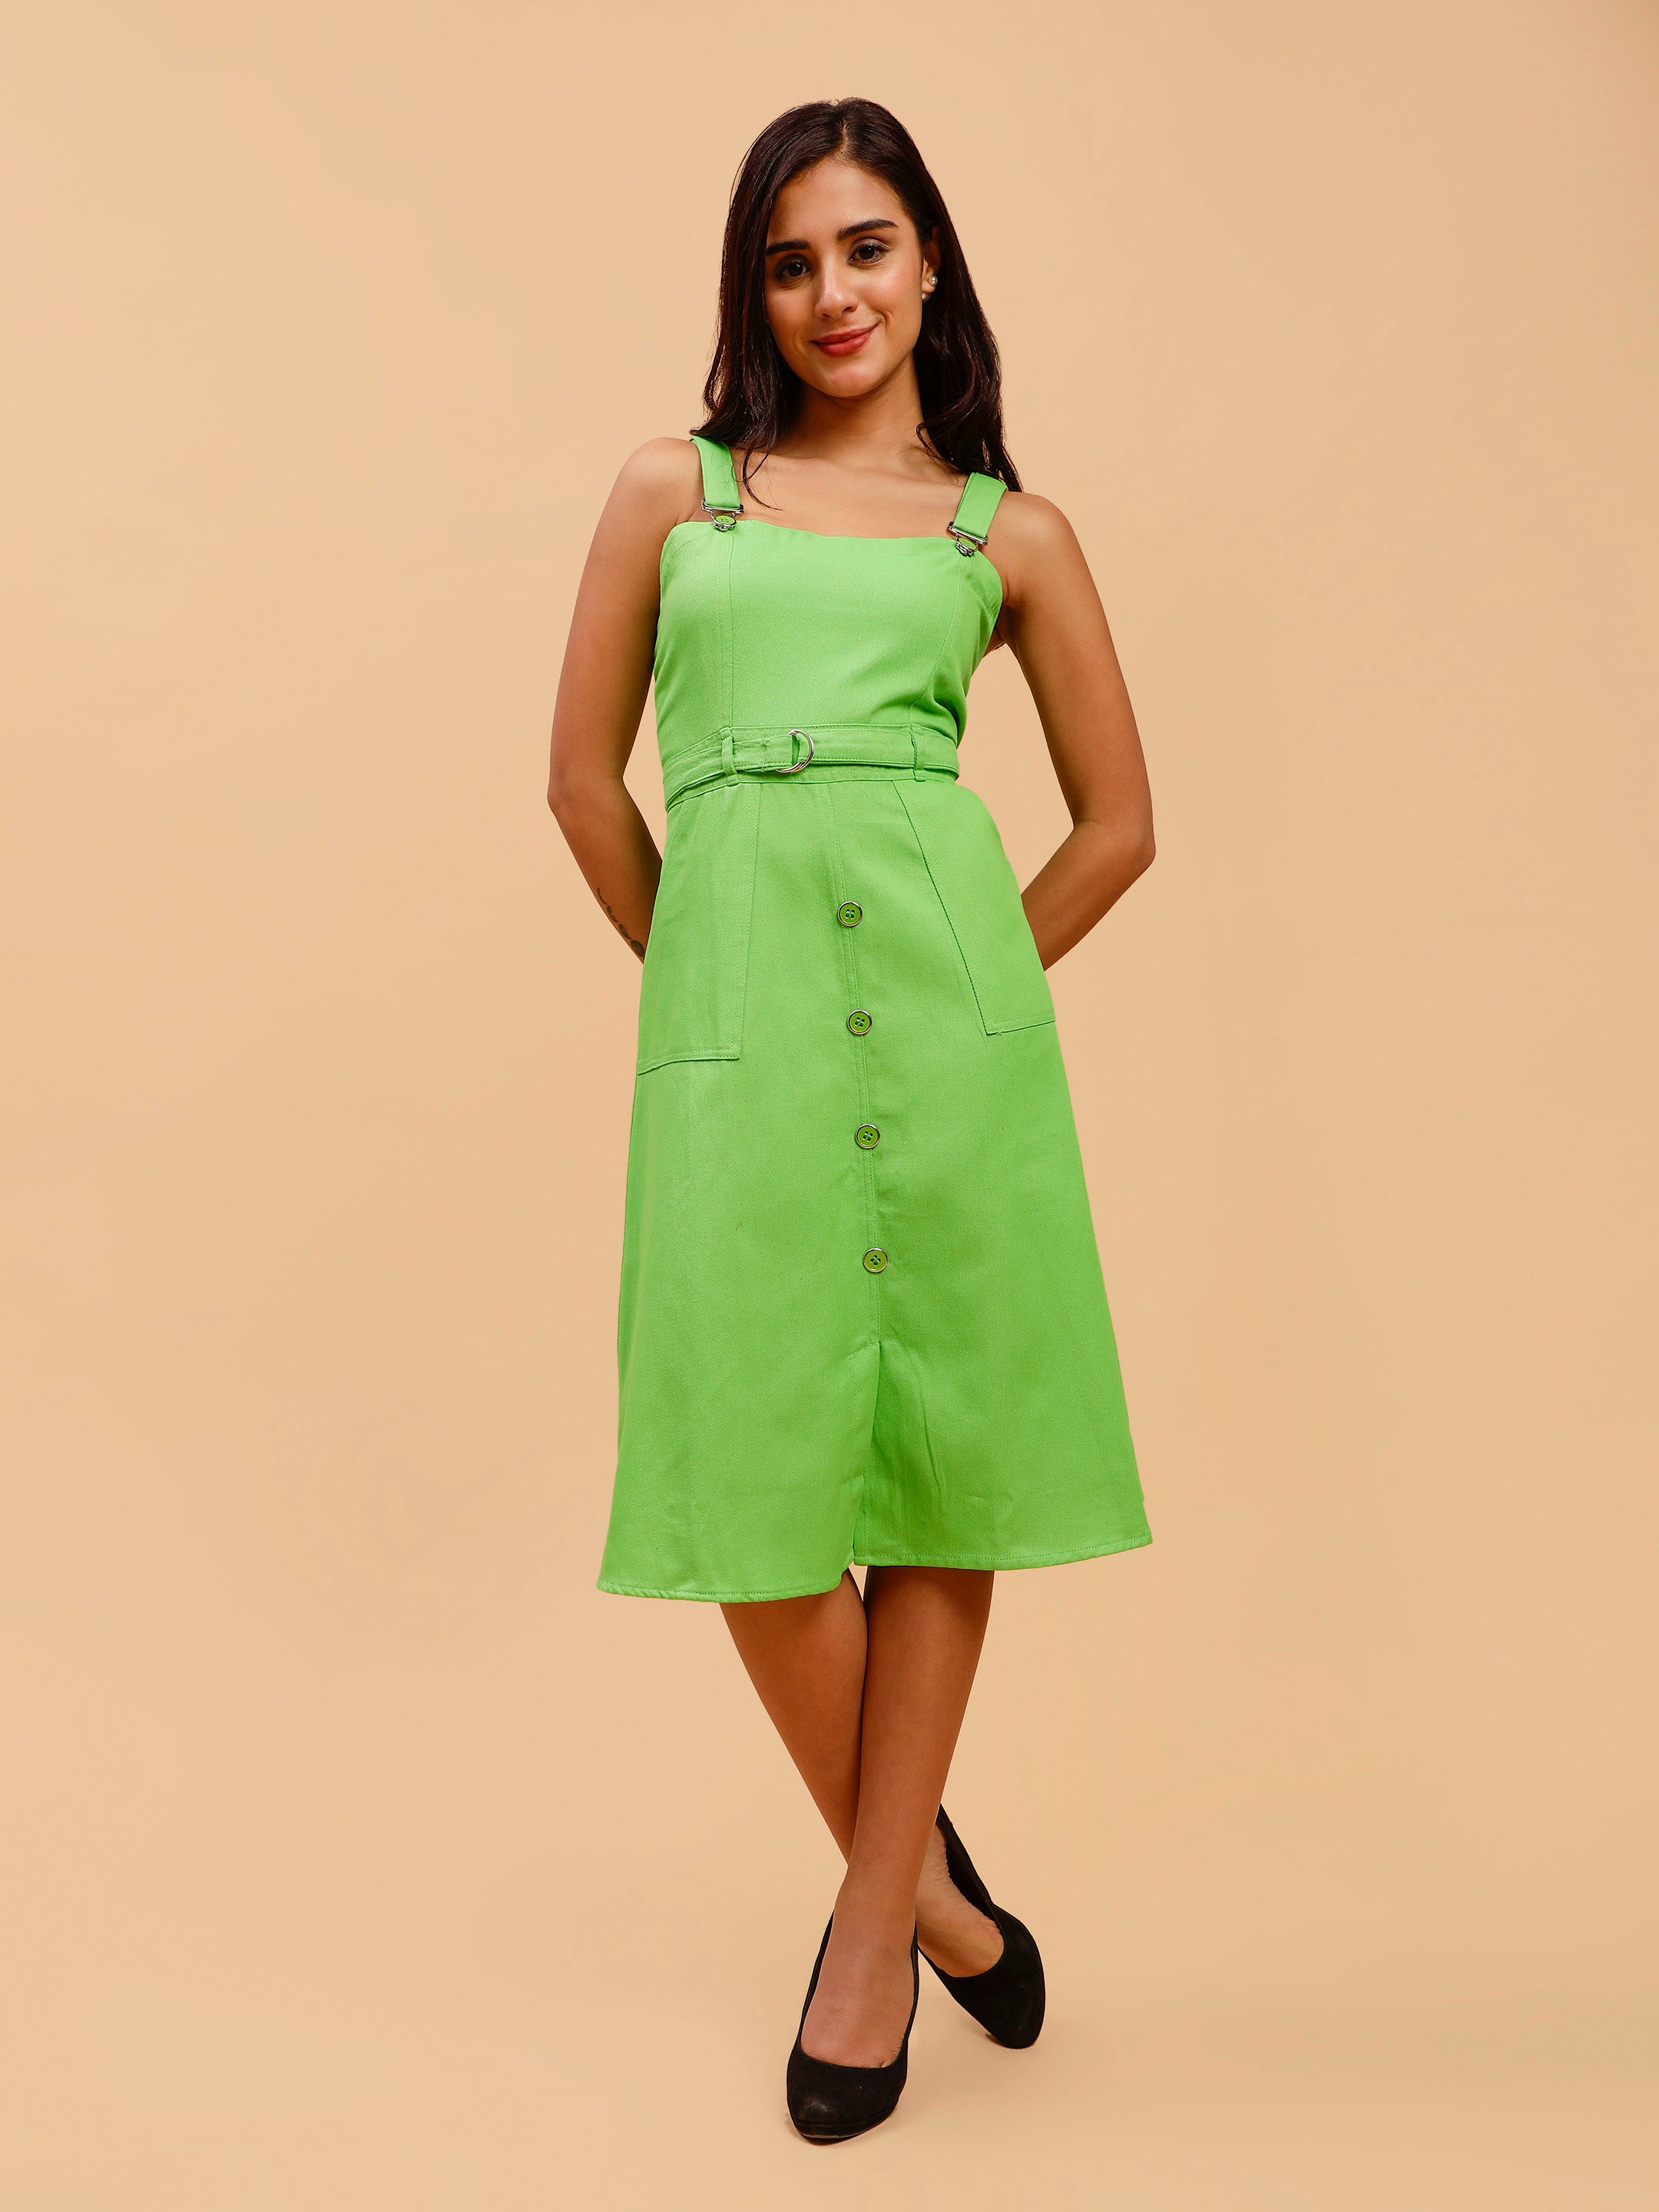 Glamoda A Green Cotton Dress